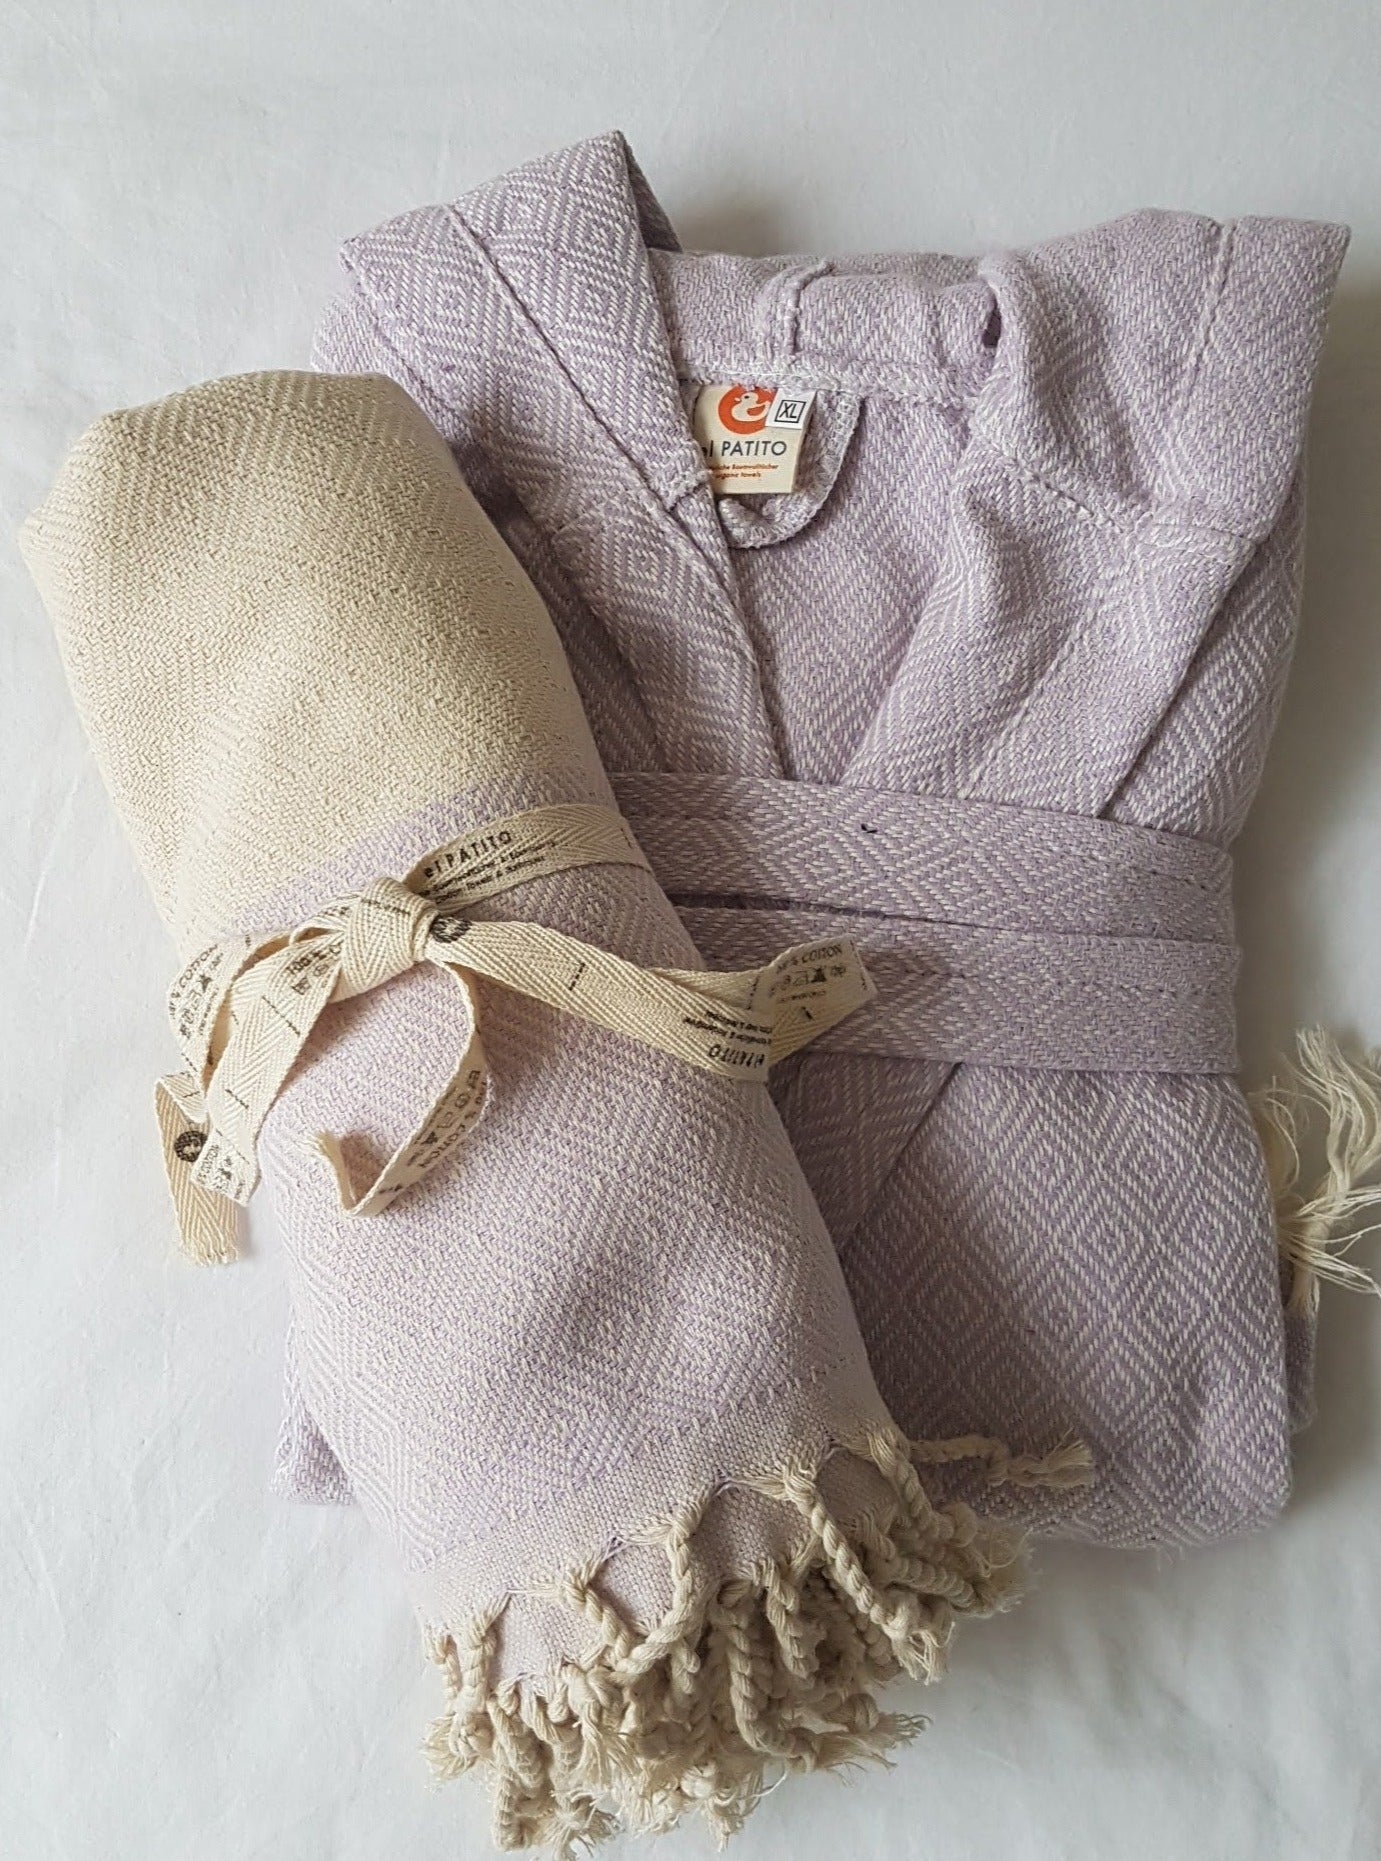 Body & Head / Hand Towels Bath Set – El Patito Towels and Bathrobes